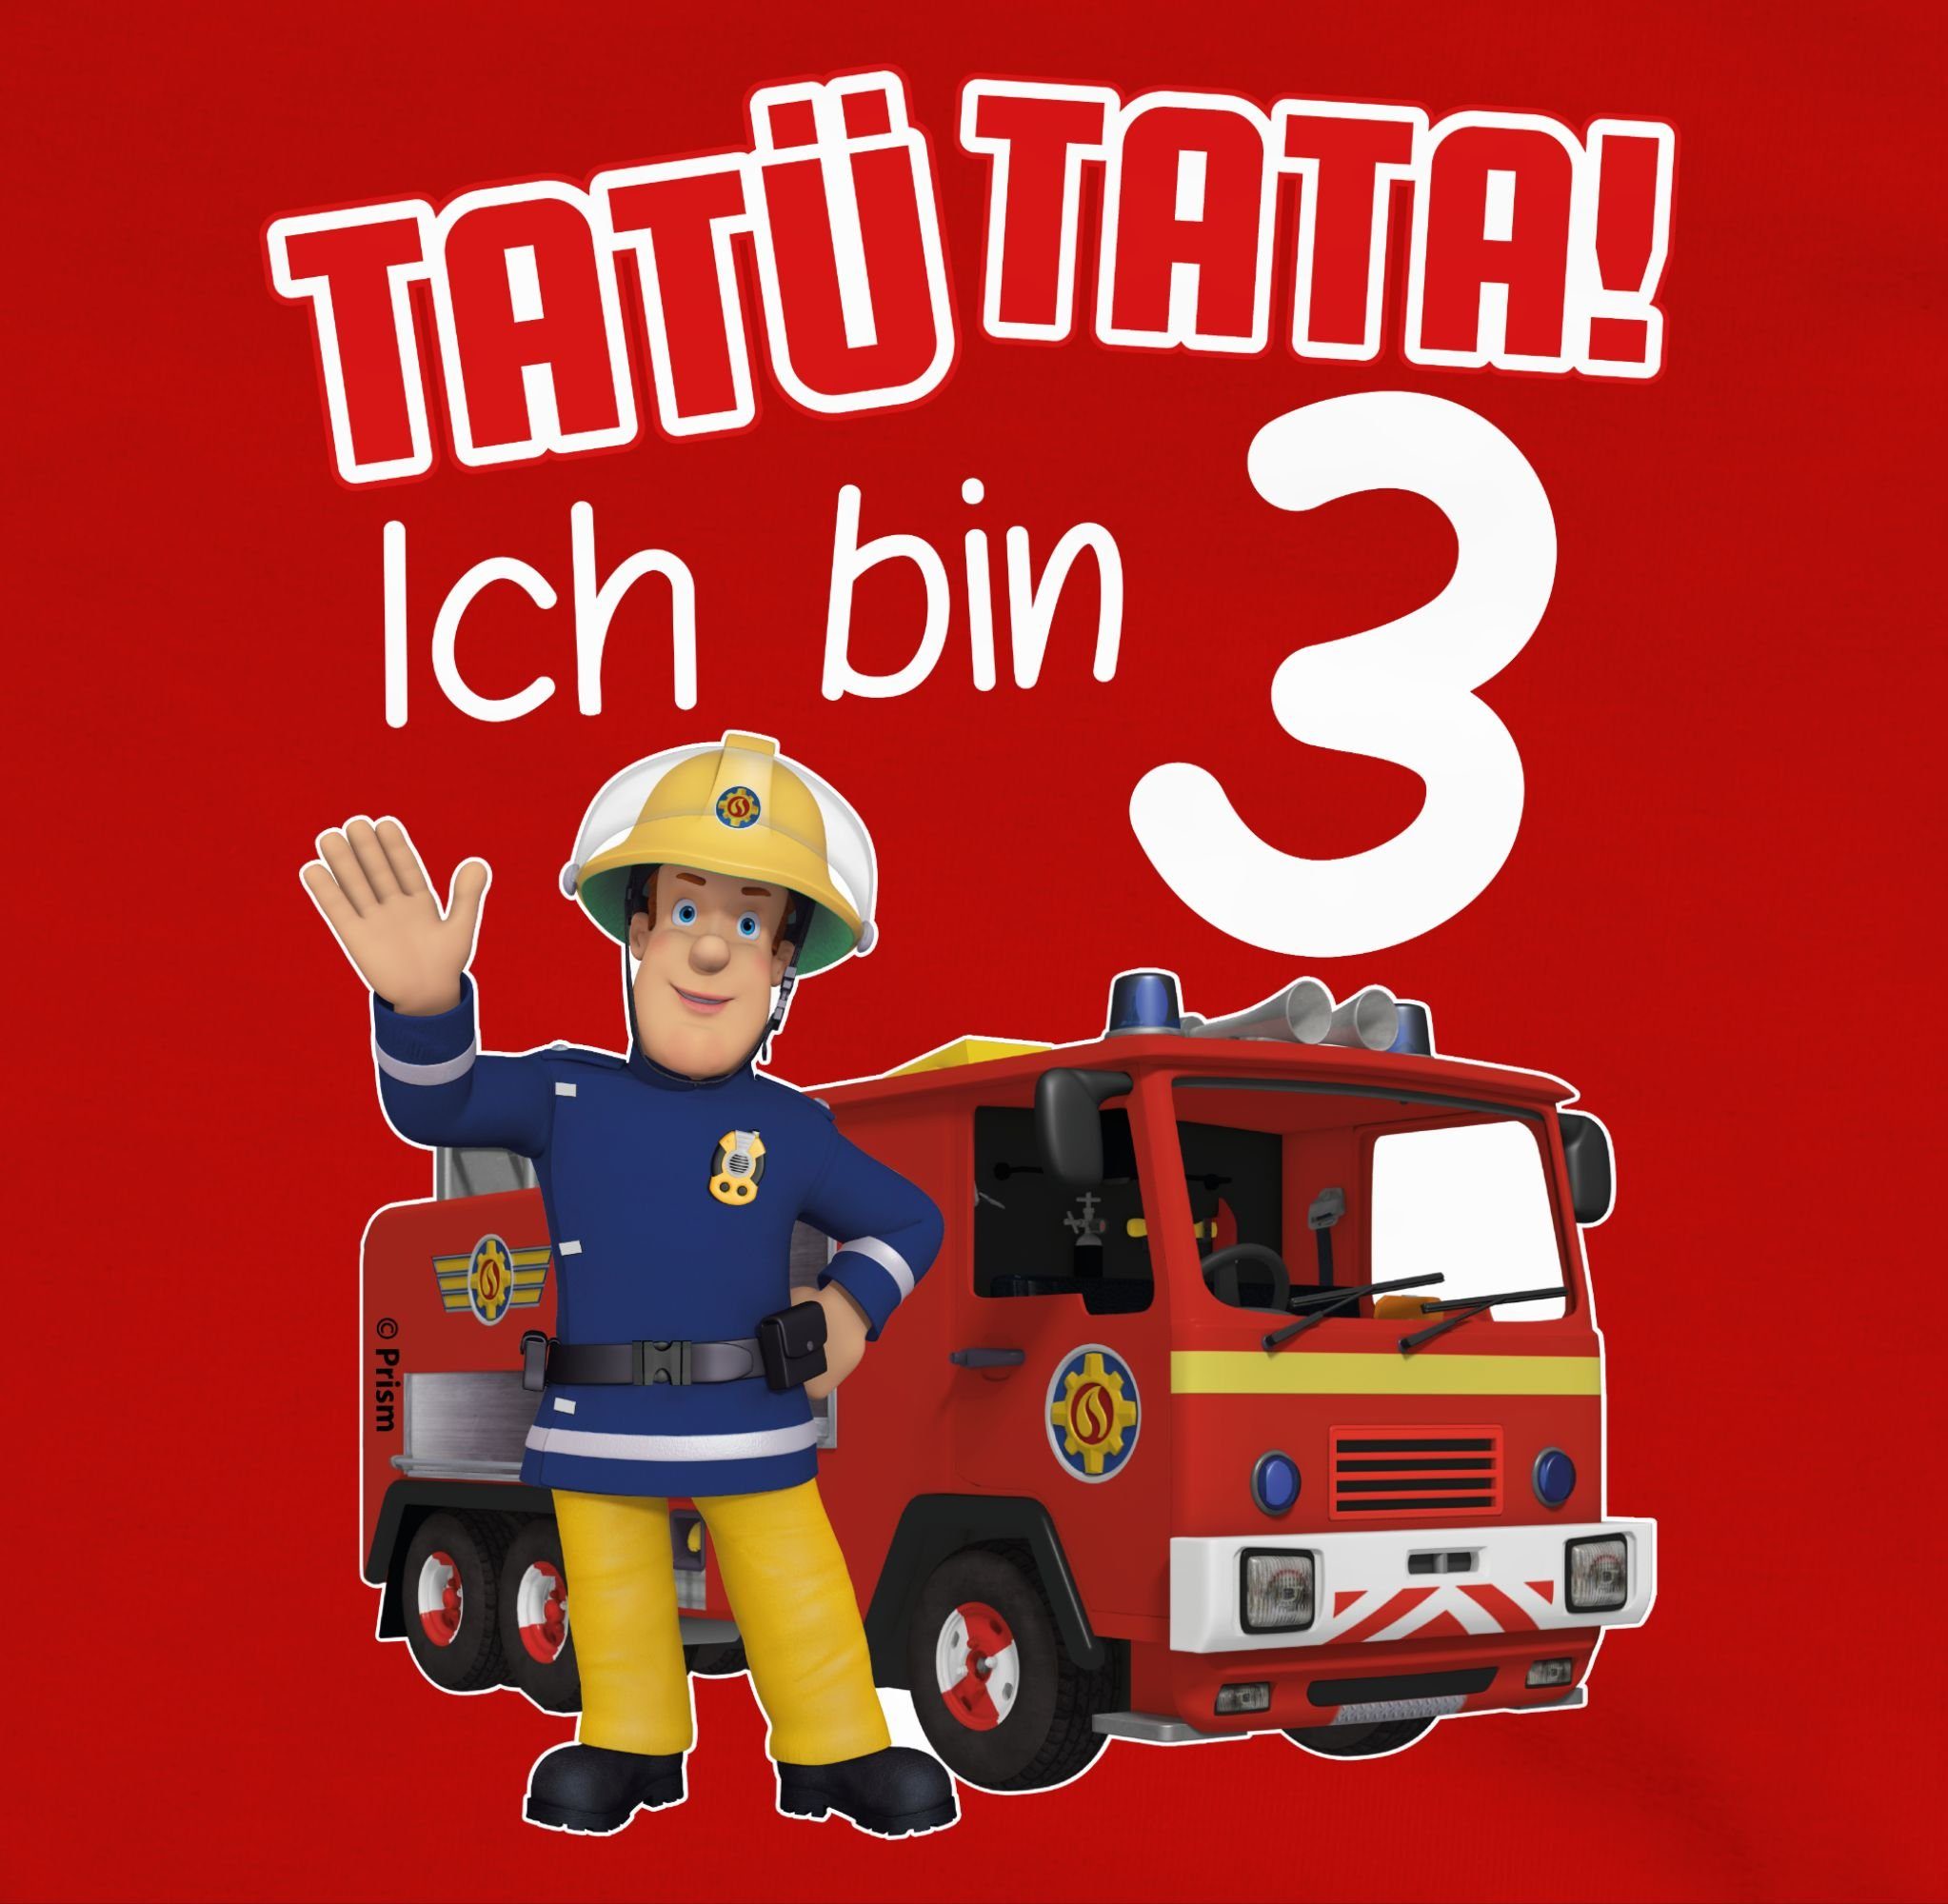 3 bin Tatü Geburtstag Shirtracer Sam 2 Ich Rot Feuerwehrmann Sweatshirt Tata! Mädchen